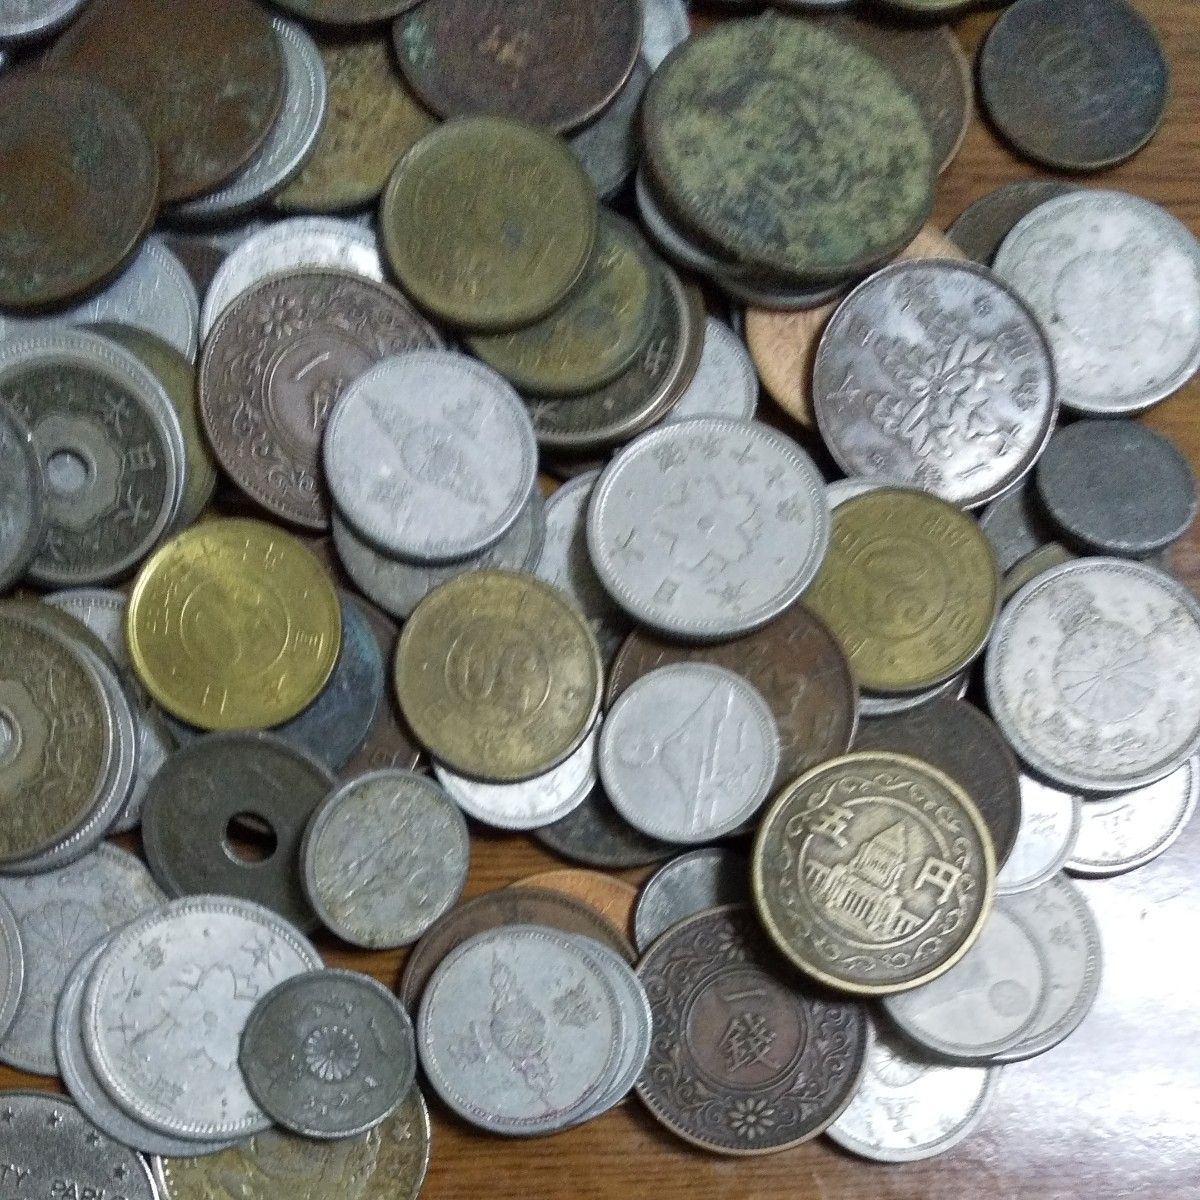 古銭 雑銭 近代貨幣 メダル コイン 外国 外貨 穴銭 まとめ セット 大量 日本 謎のコインなど